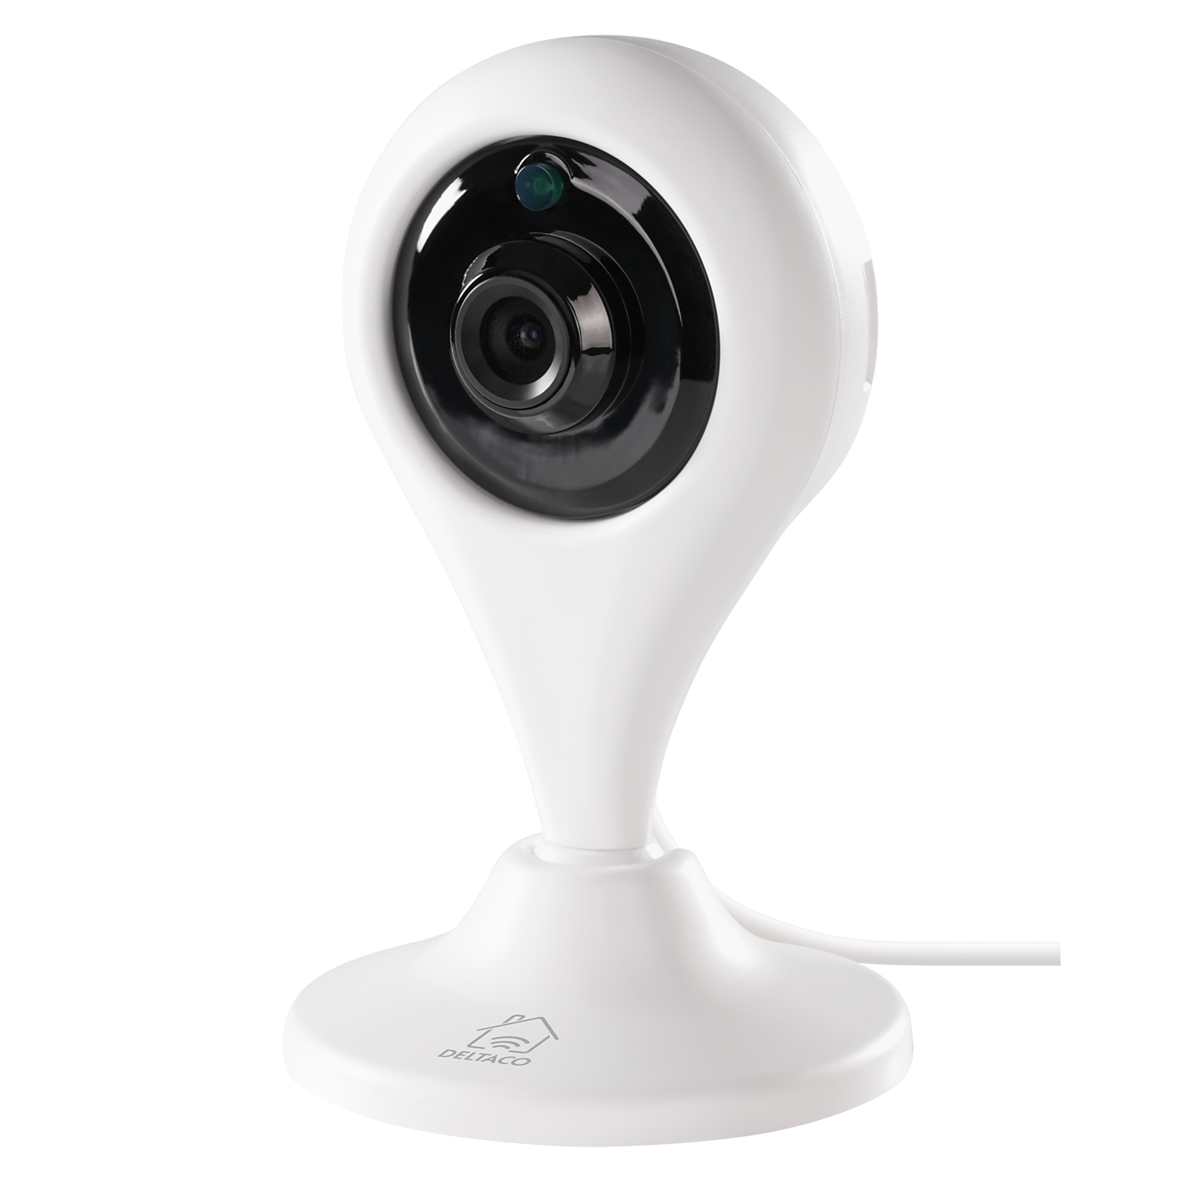 Deltaco Smart Home nätverkskamera för inomhusbruk, 720p, WiFi